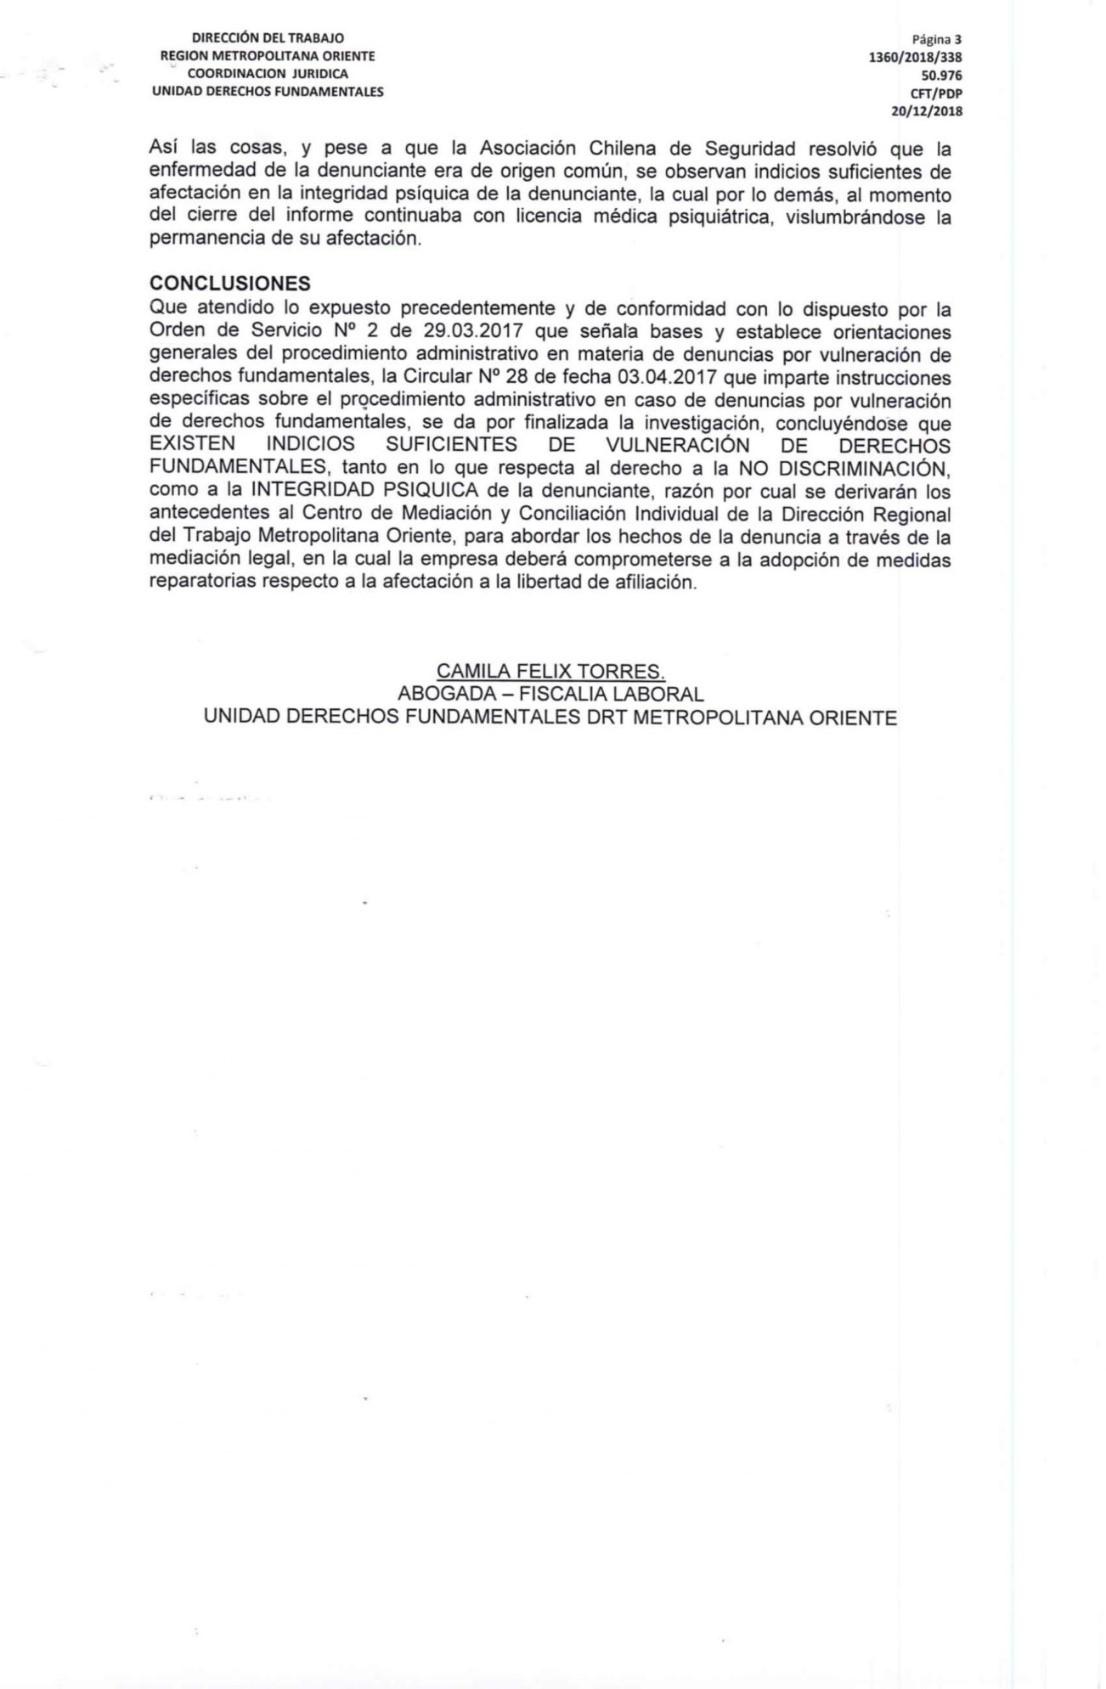 Conclusión jurídica del caso 1360/2018/338 de Catalina Bonilla (dicumento).